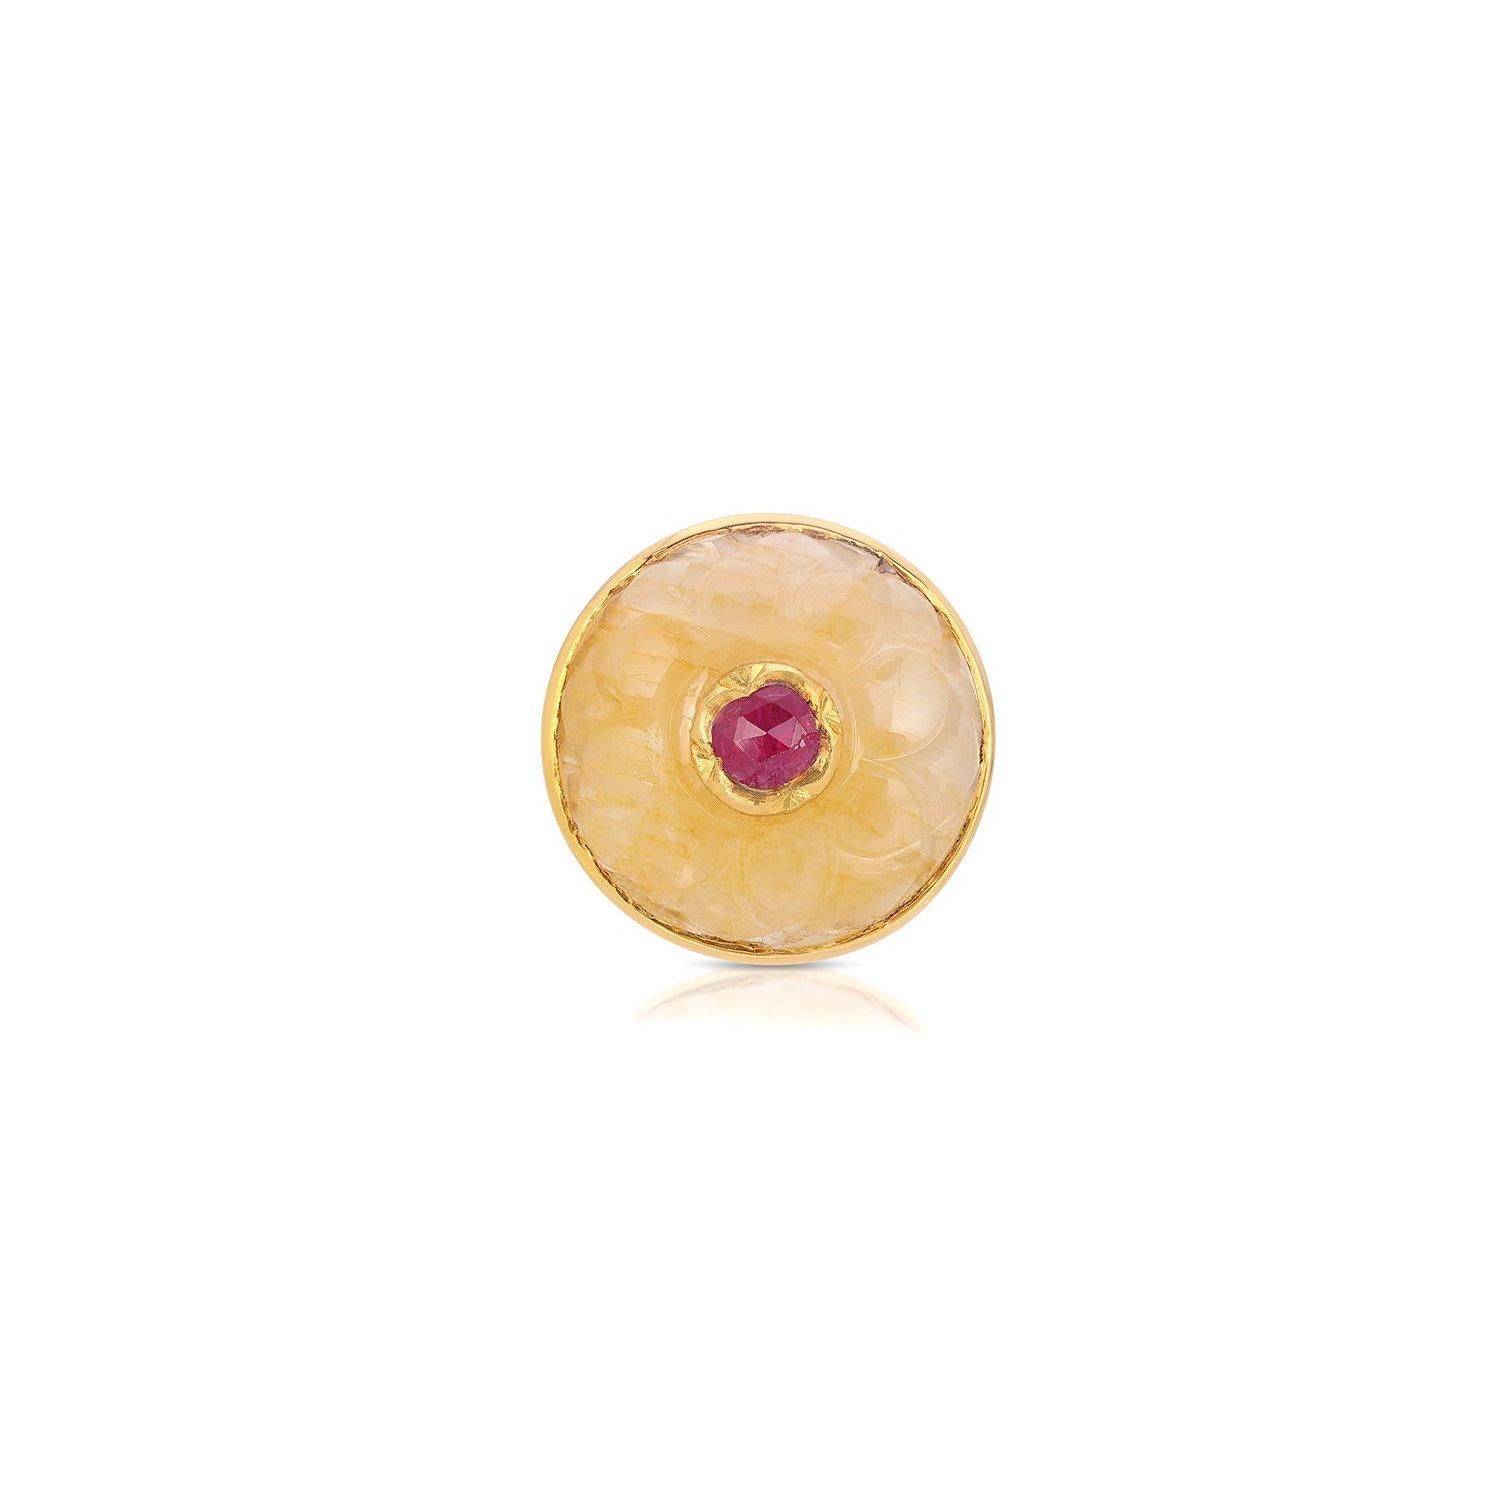 Ein stilvoller Ring mit einem wunderschön geschnitzten gelben Cabochon-Saphir, der mit einem rosafarbenen Rubin kuppelförmig besetzt ist und in eine Goldfassung im Kundan-Stil eingefasst wurde.

- Natürlicher gelber Saphir, Gewicht ca. 15 Karat. 
-